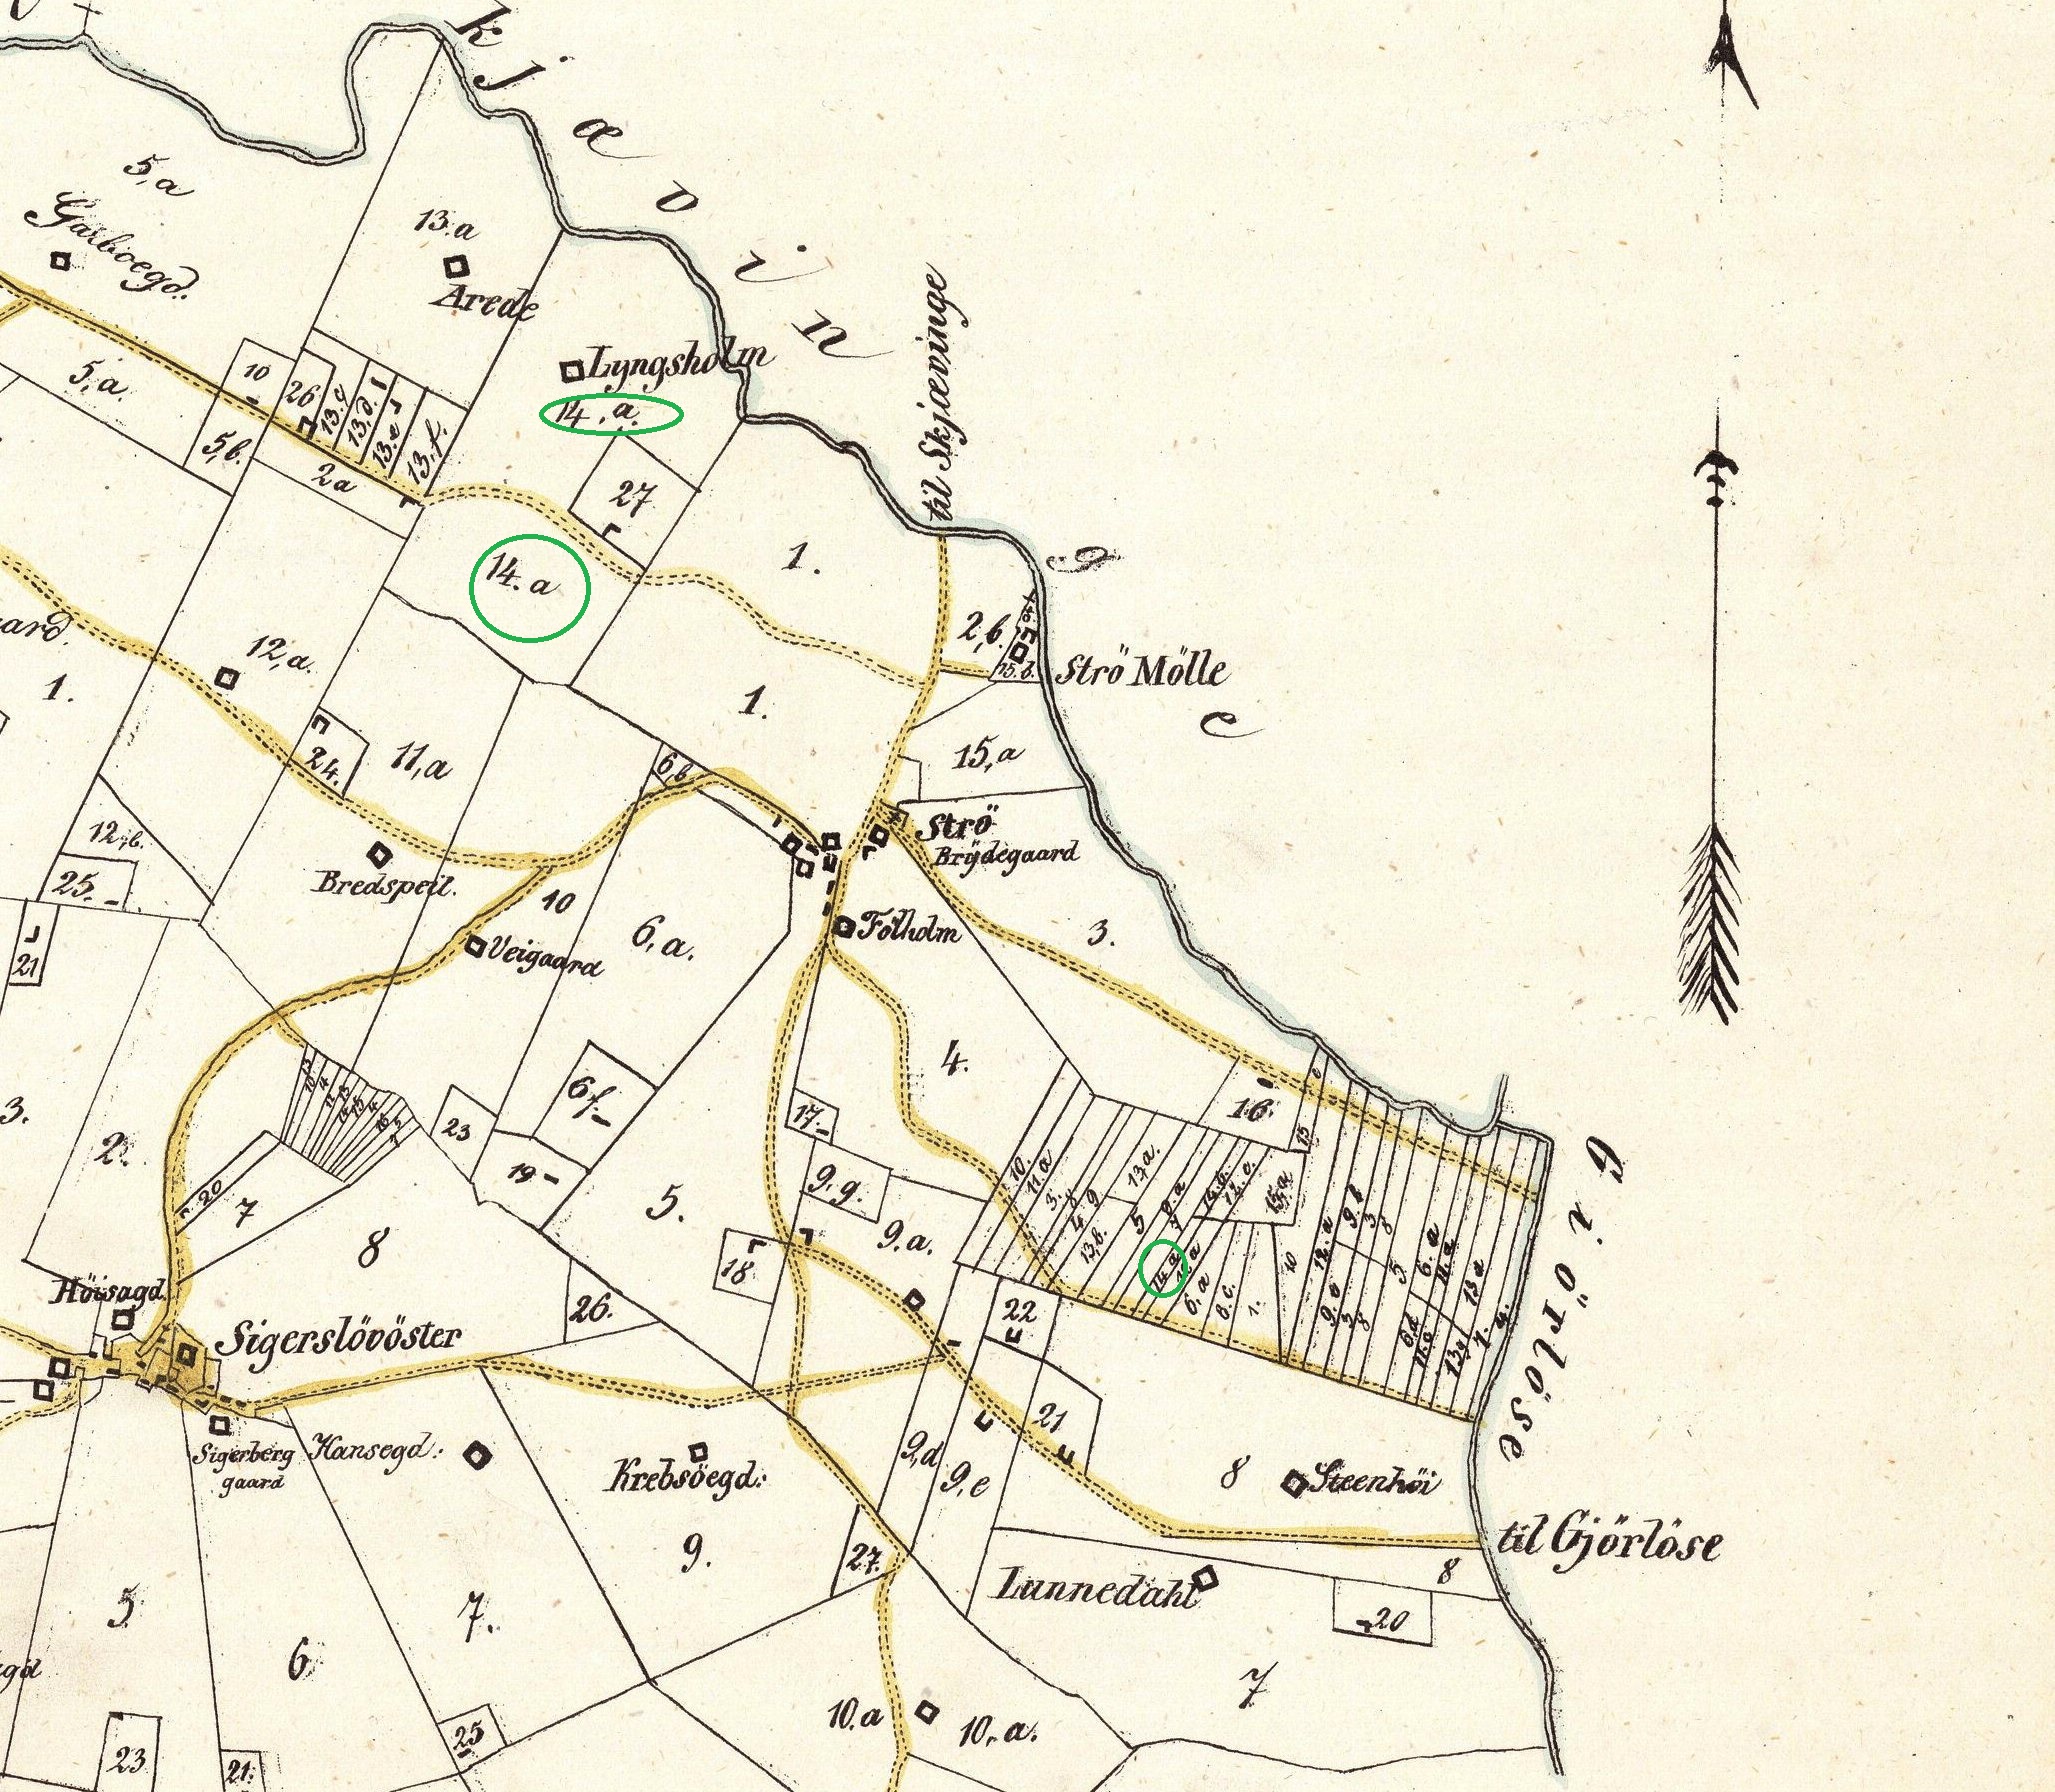 Lyngsholms arealer 1850